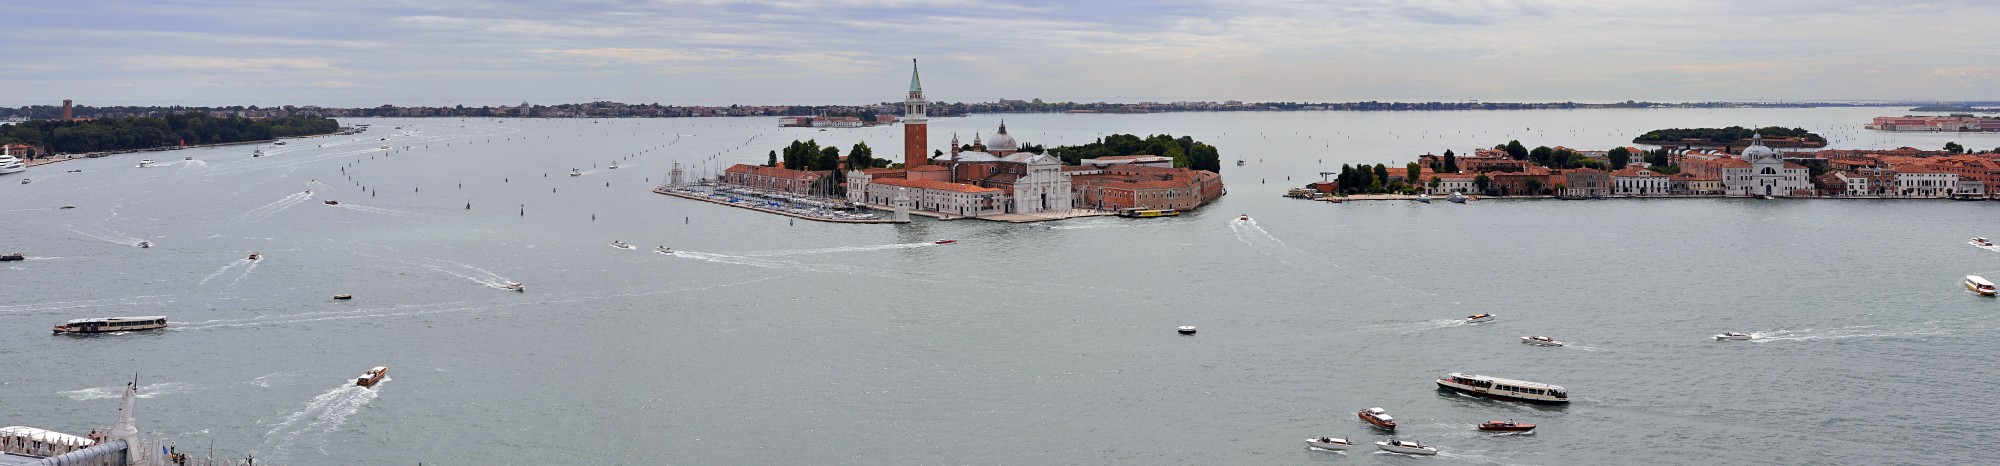 San Giorgio Maggiore Island (Venice) 001